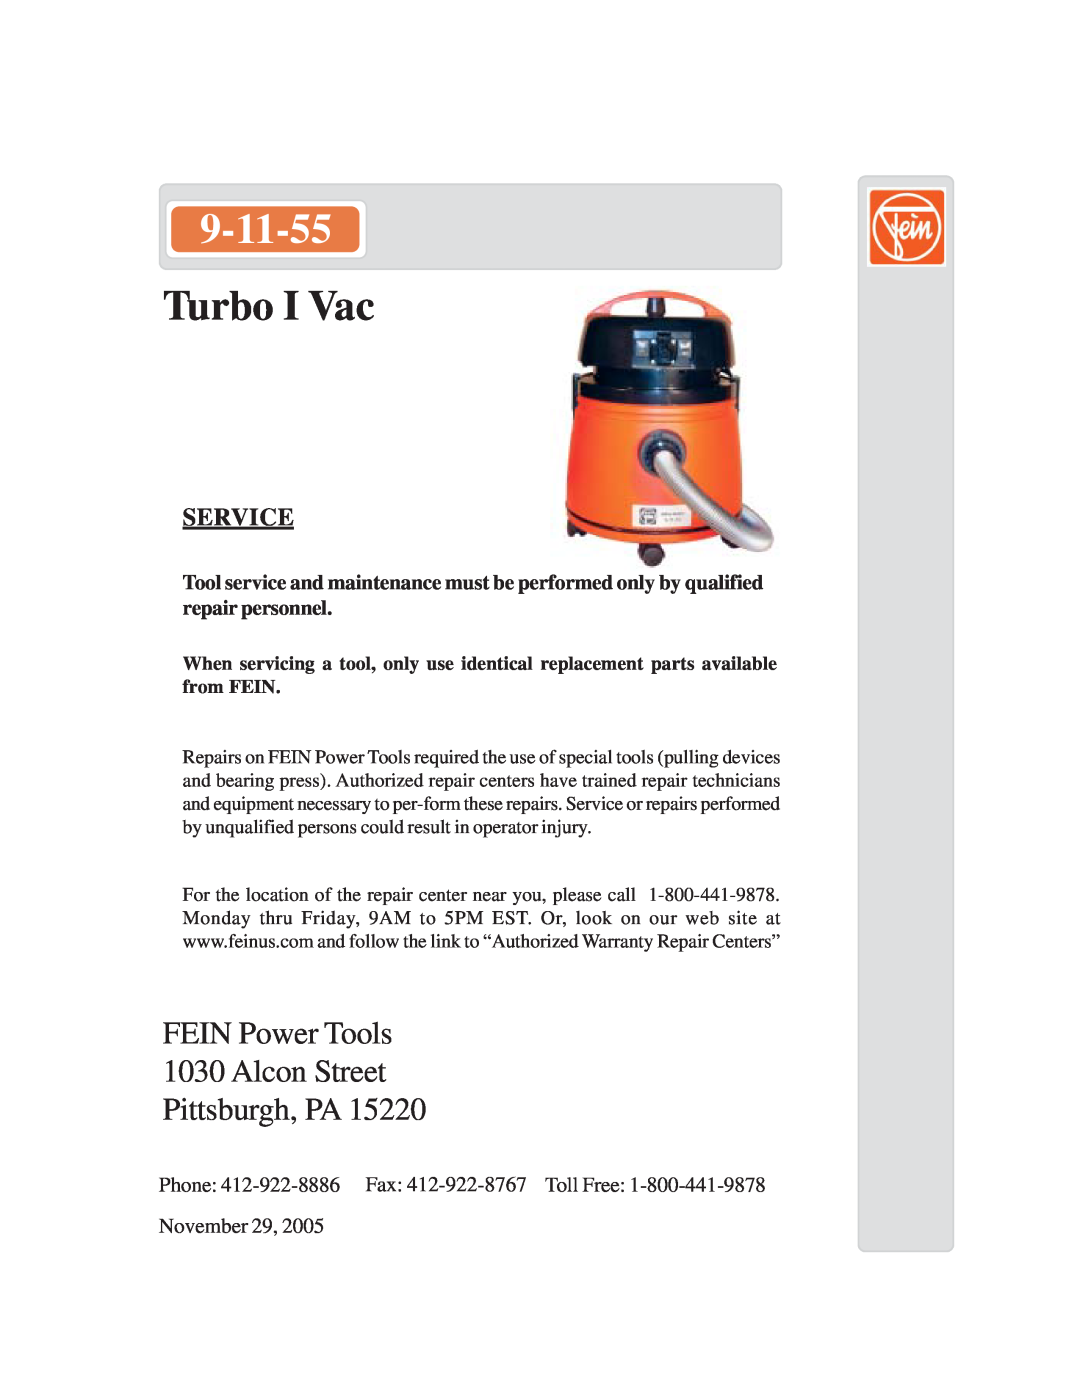 FEIN Power Tools 9-11-55 warranty Turbo I Vac, FEIN Power Tools 1030 Alcon Street Pittsburgh, PA, Service, November 